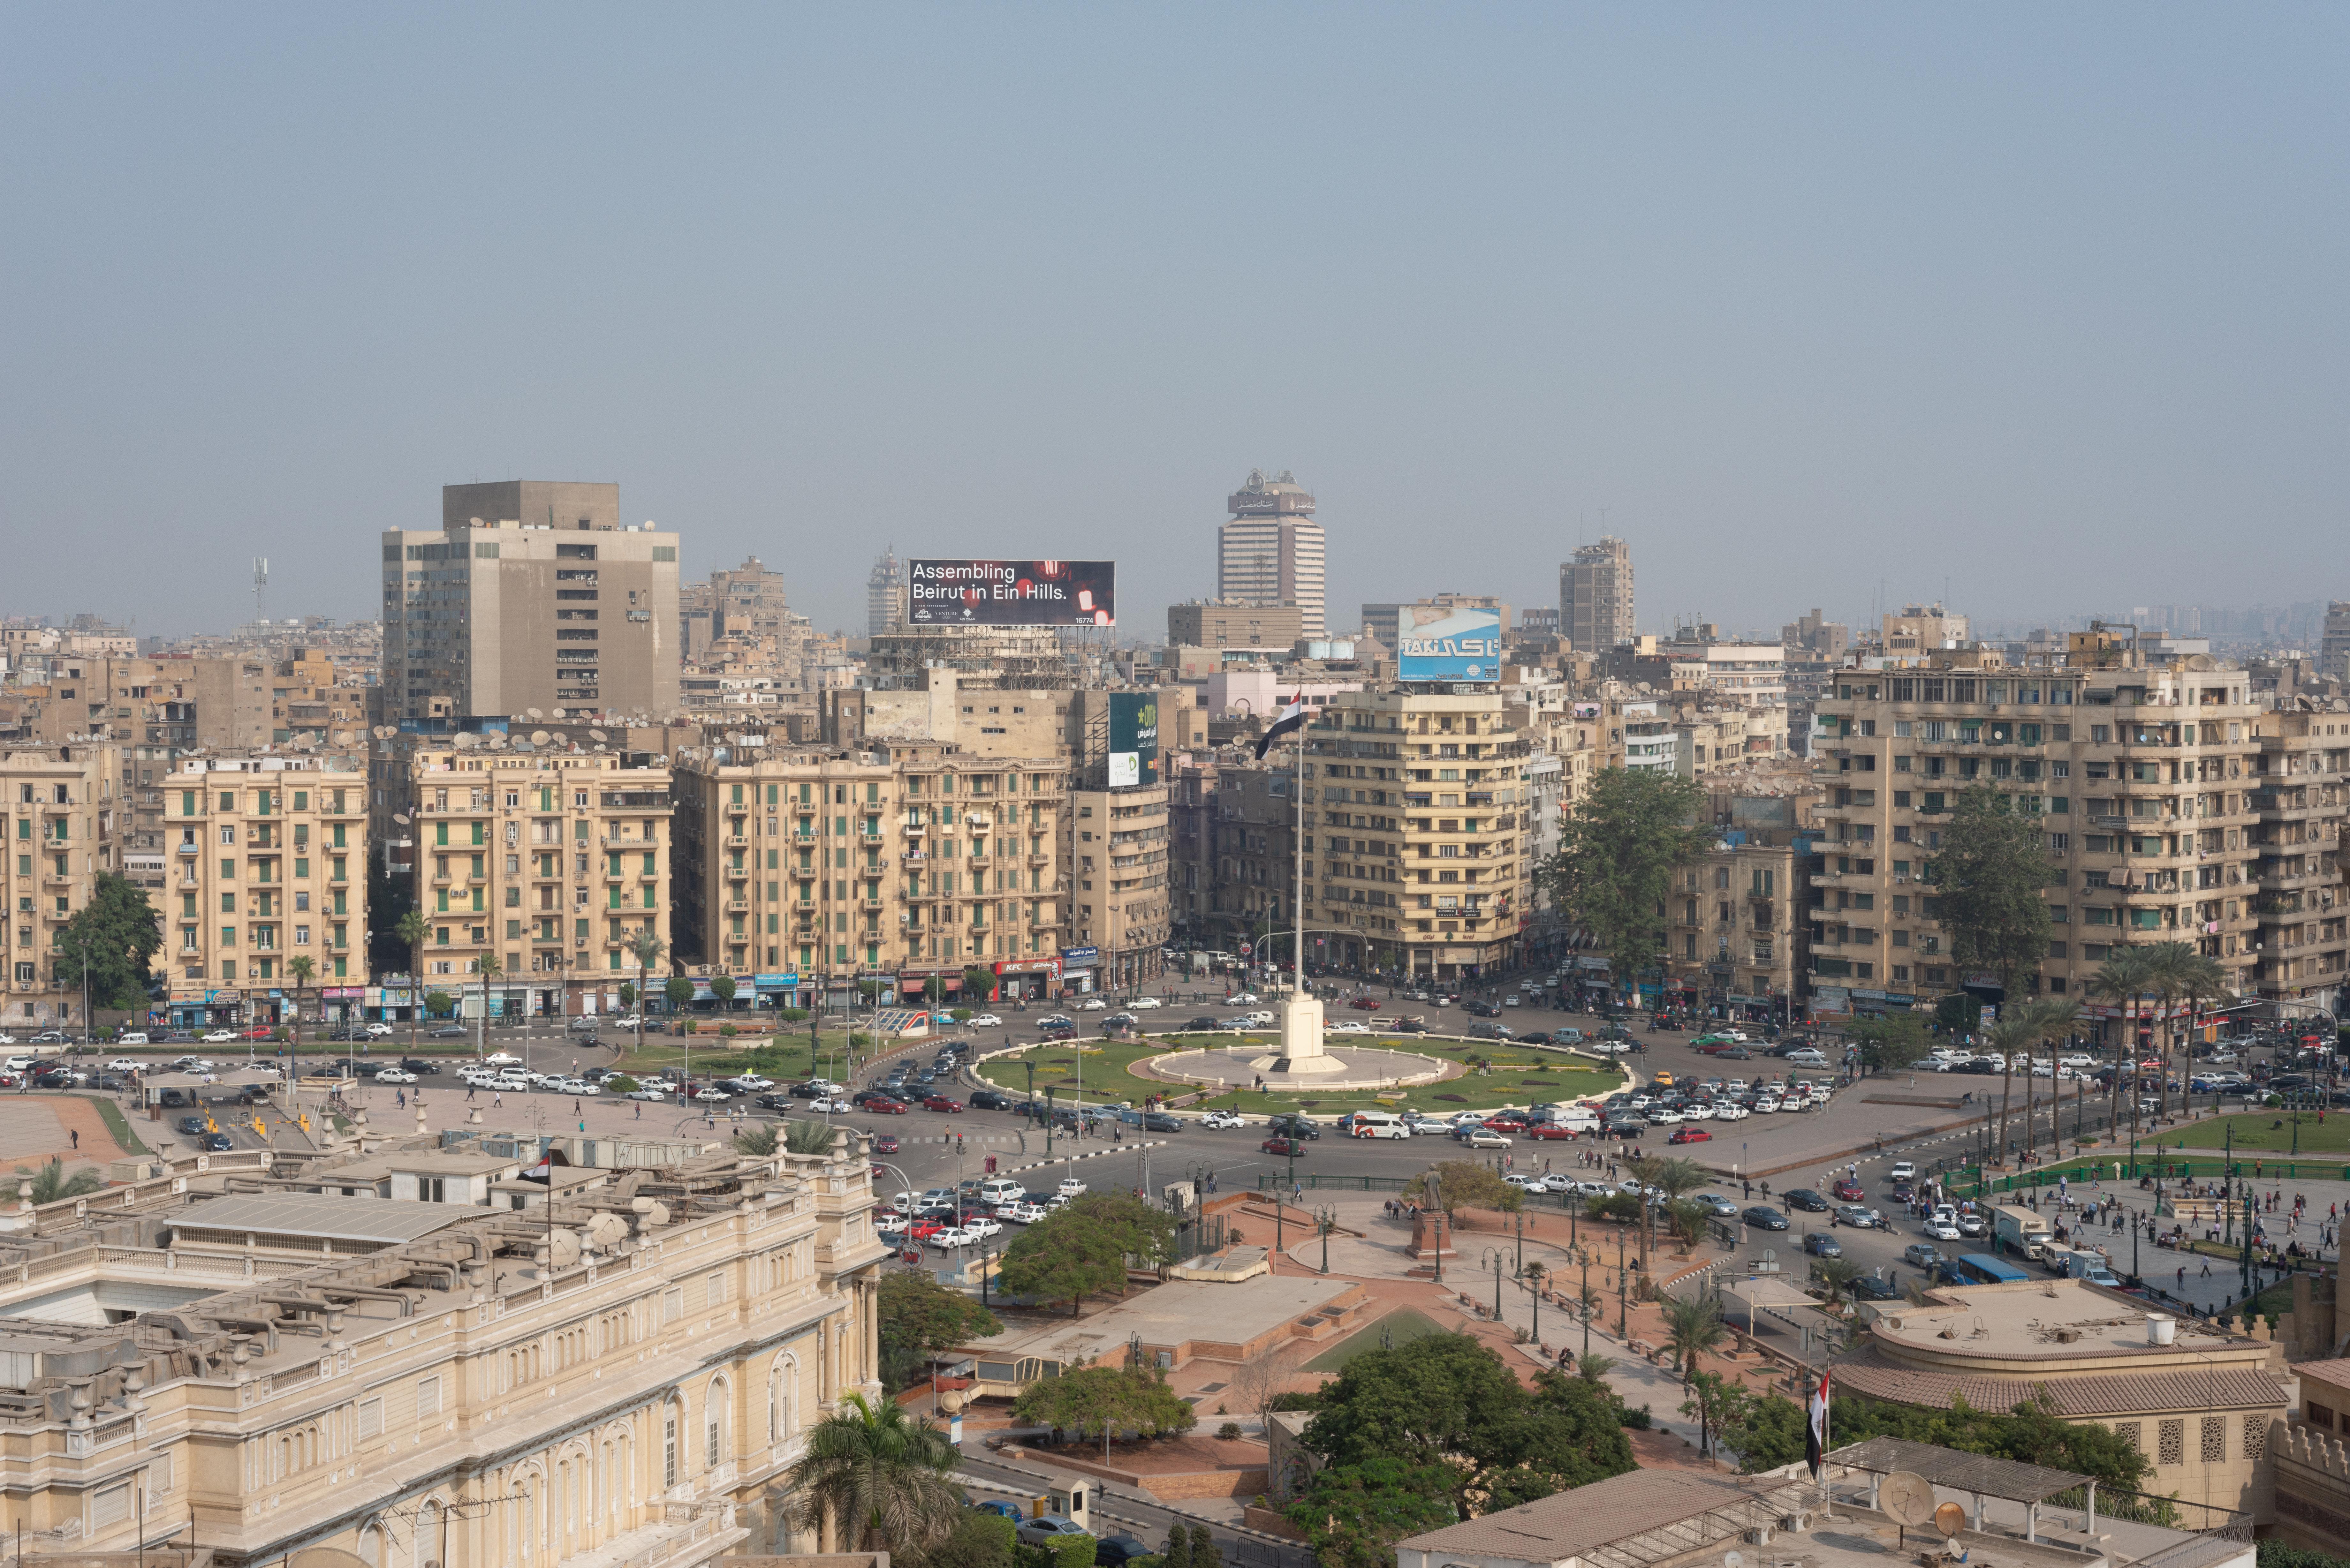 InterContinental Cairo Semiramis